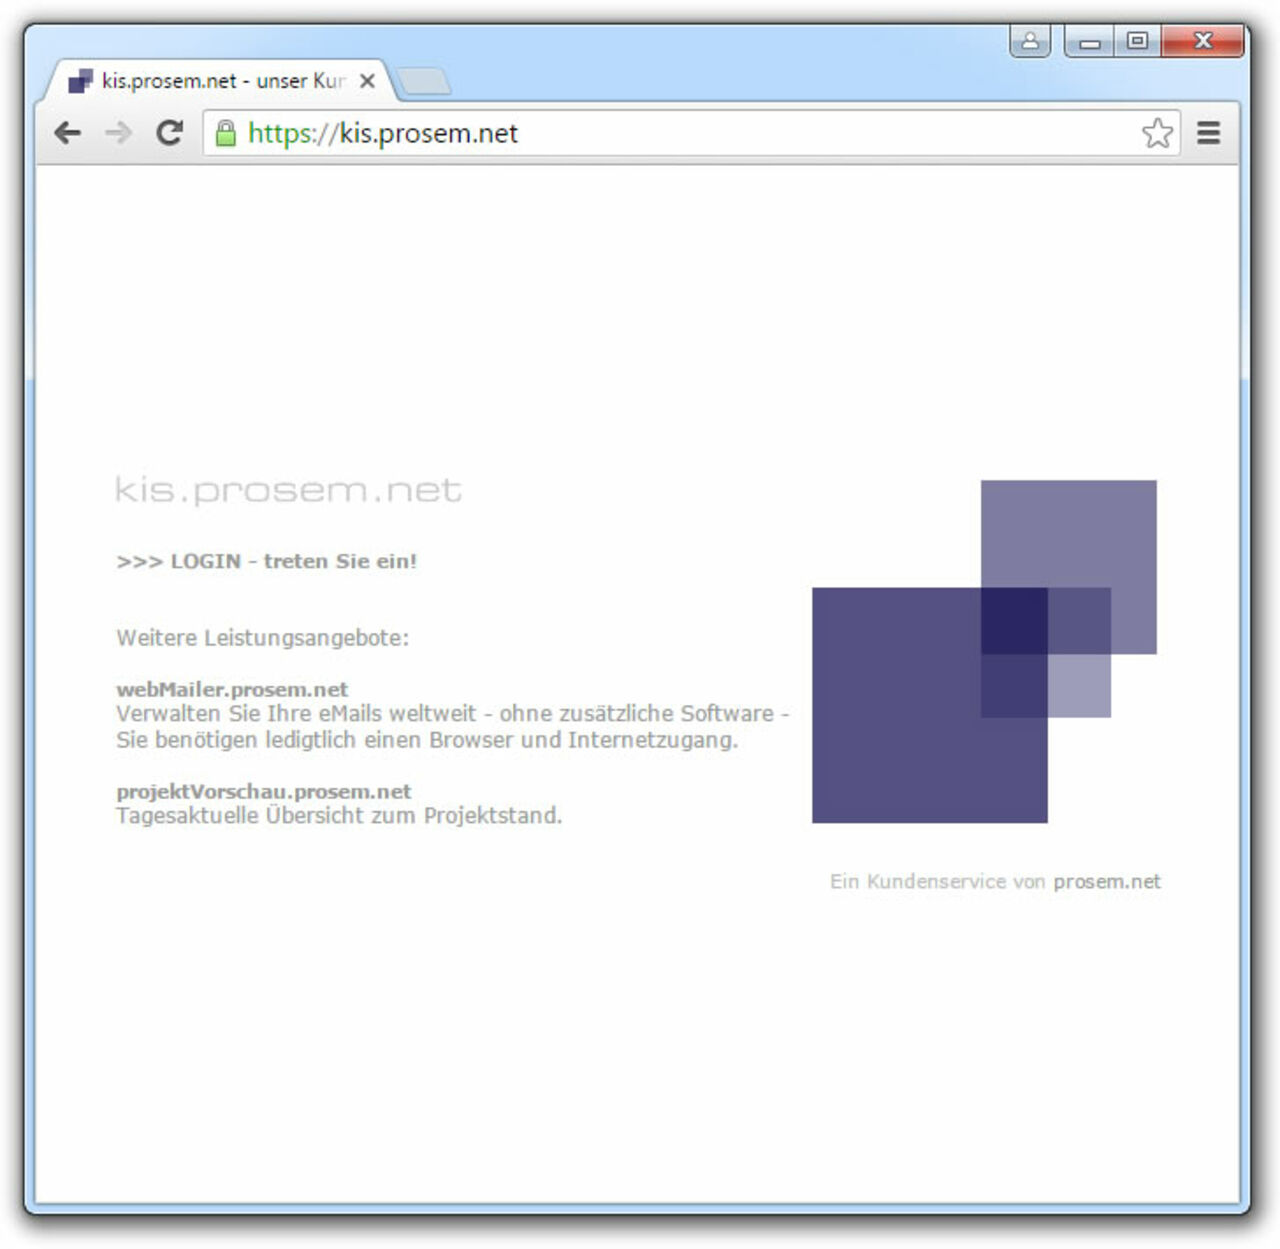 Bild der Startseite des Kunden-Informations-System kis